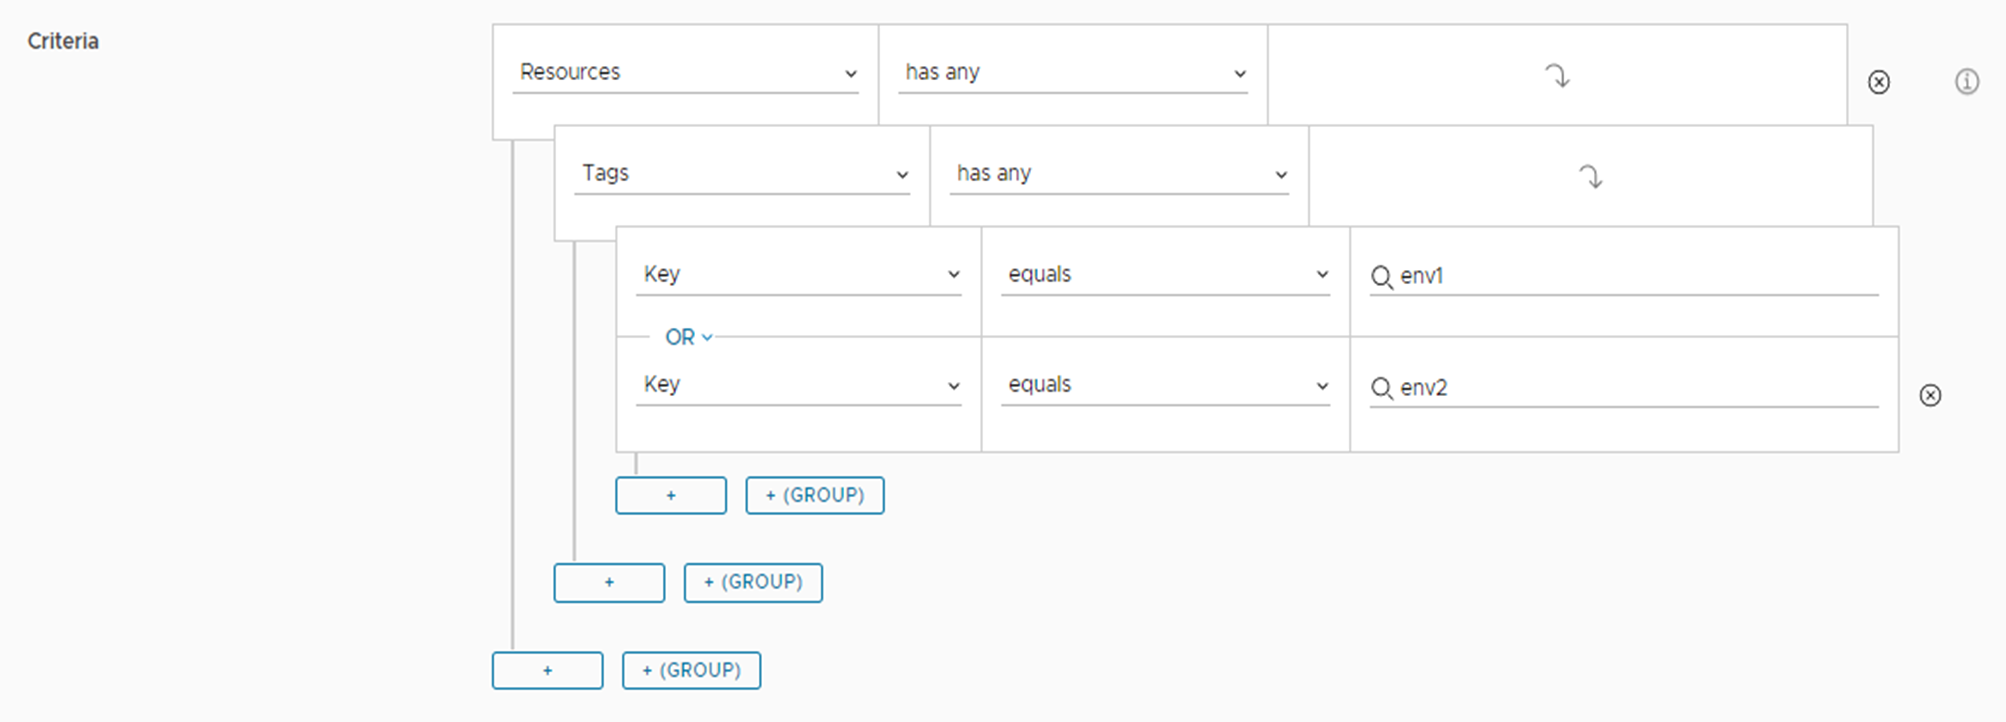 Exemplo da expressão de critérios de implantação de várias chaves conforme aparece na UI.